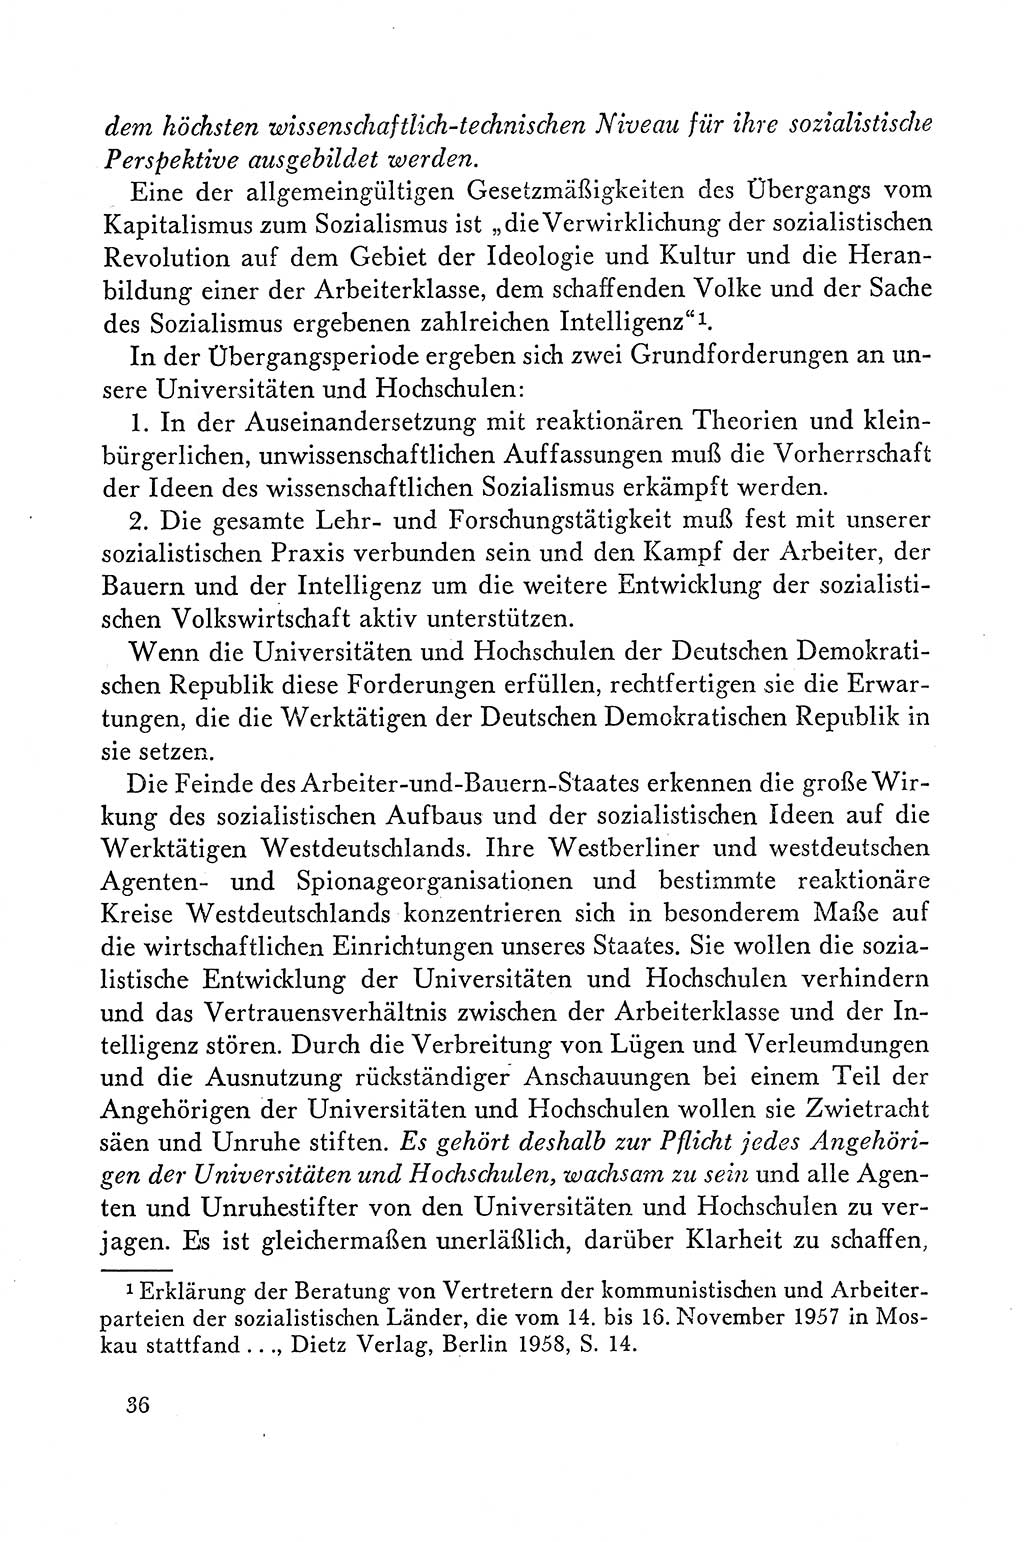 Dokumente der Sozialistischen Einheitspartei Deutschlands (SED) [Deutsche Demokratische Republik (DDR)] 1958-1959, Seite 36 (Dok. SED DDR 1958-1959, S. 36)